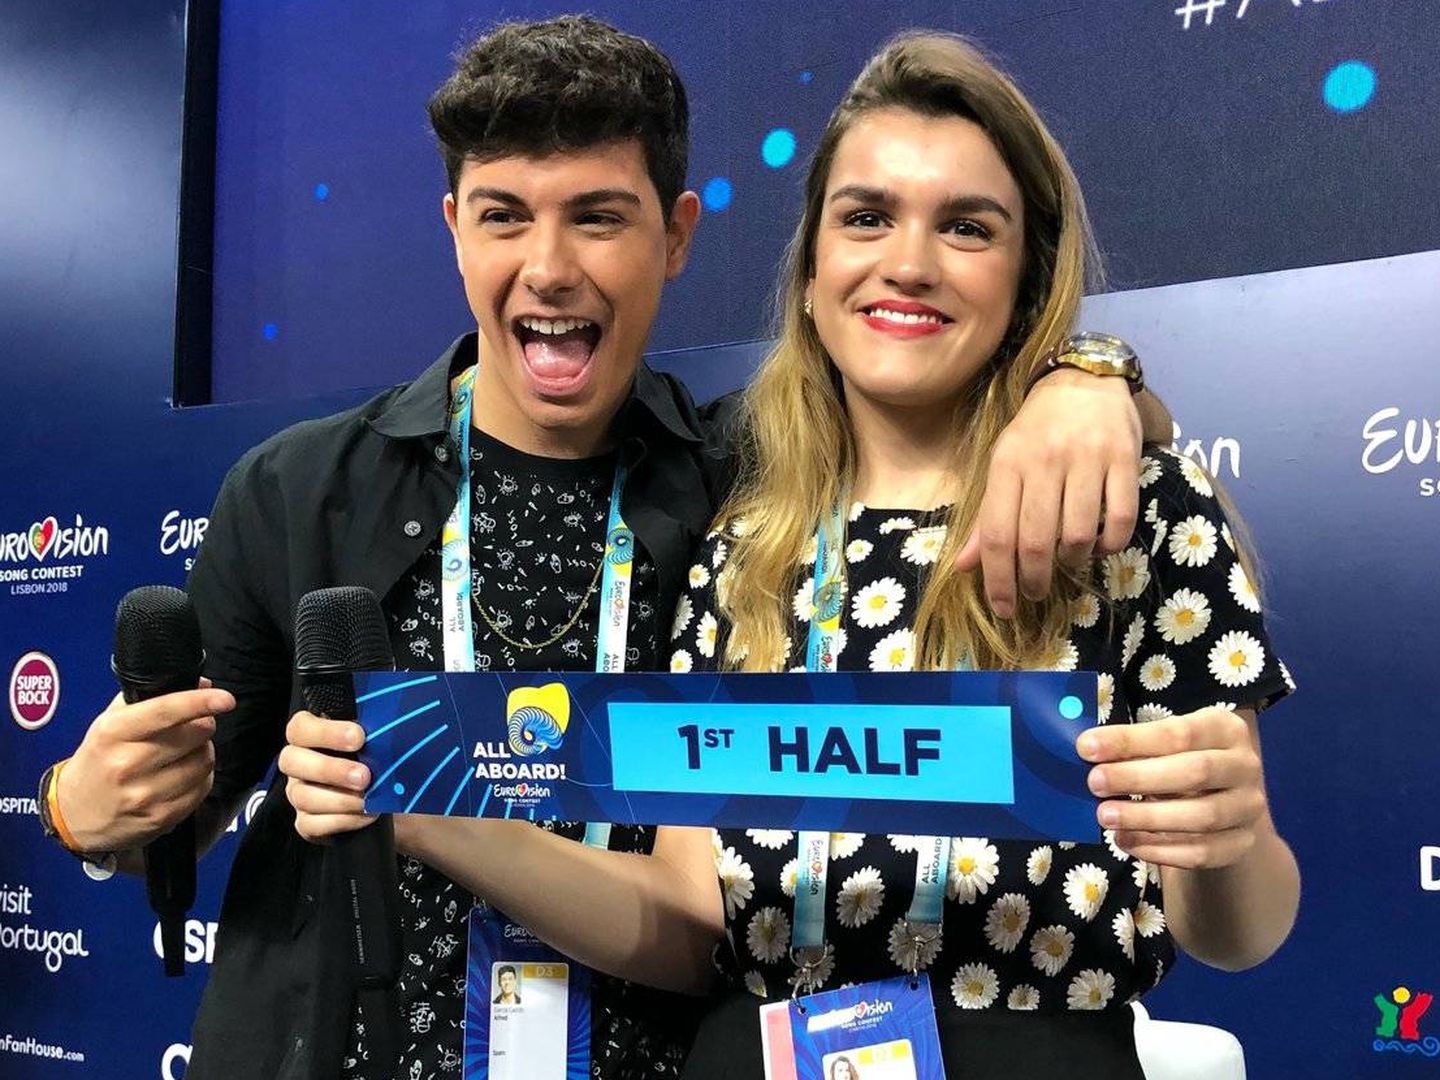 Alfred y Amaia actuarán en la primera mitad del Festival de Eurovisión 2018. (Eurovision.tv)